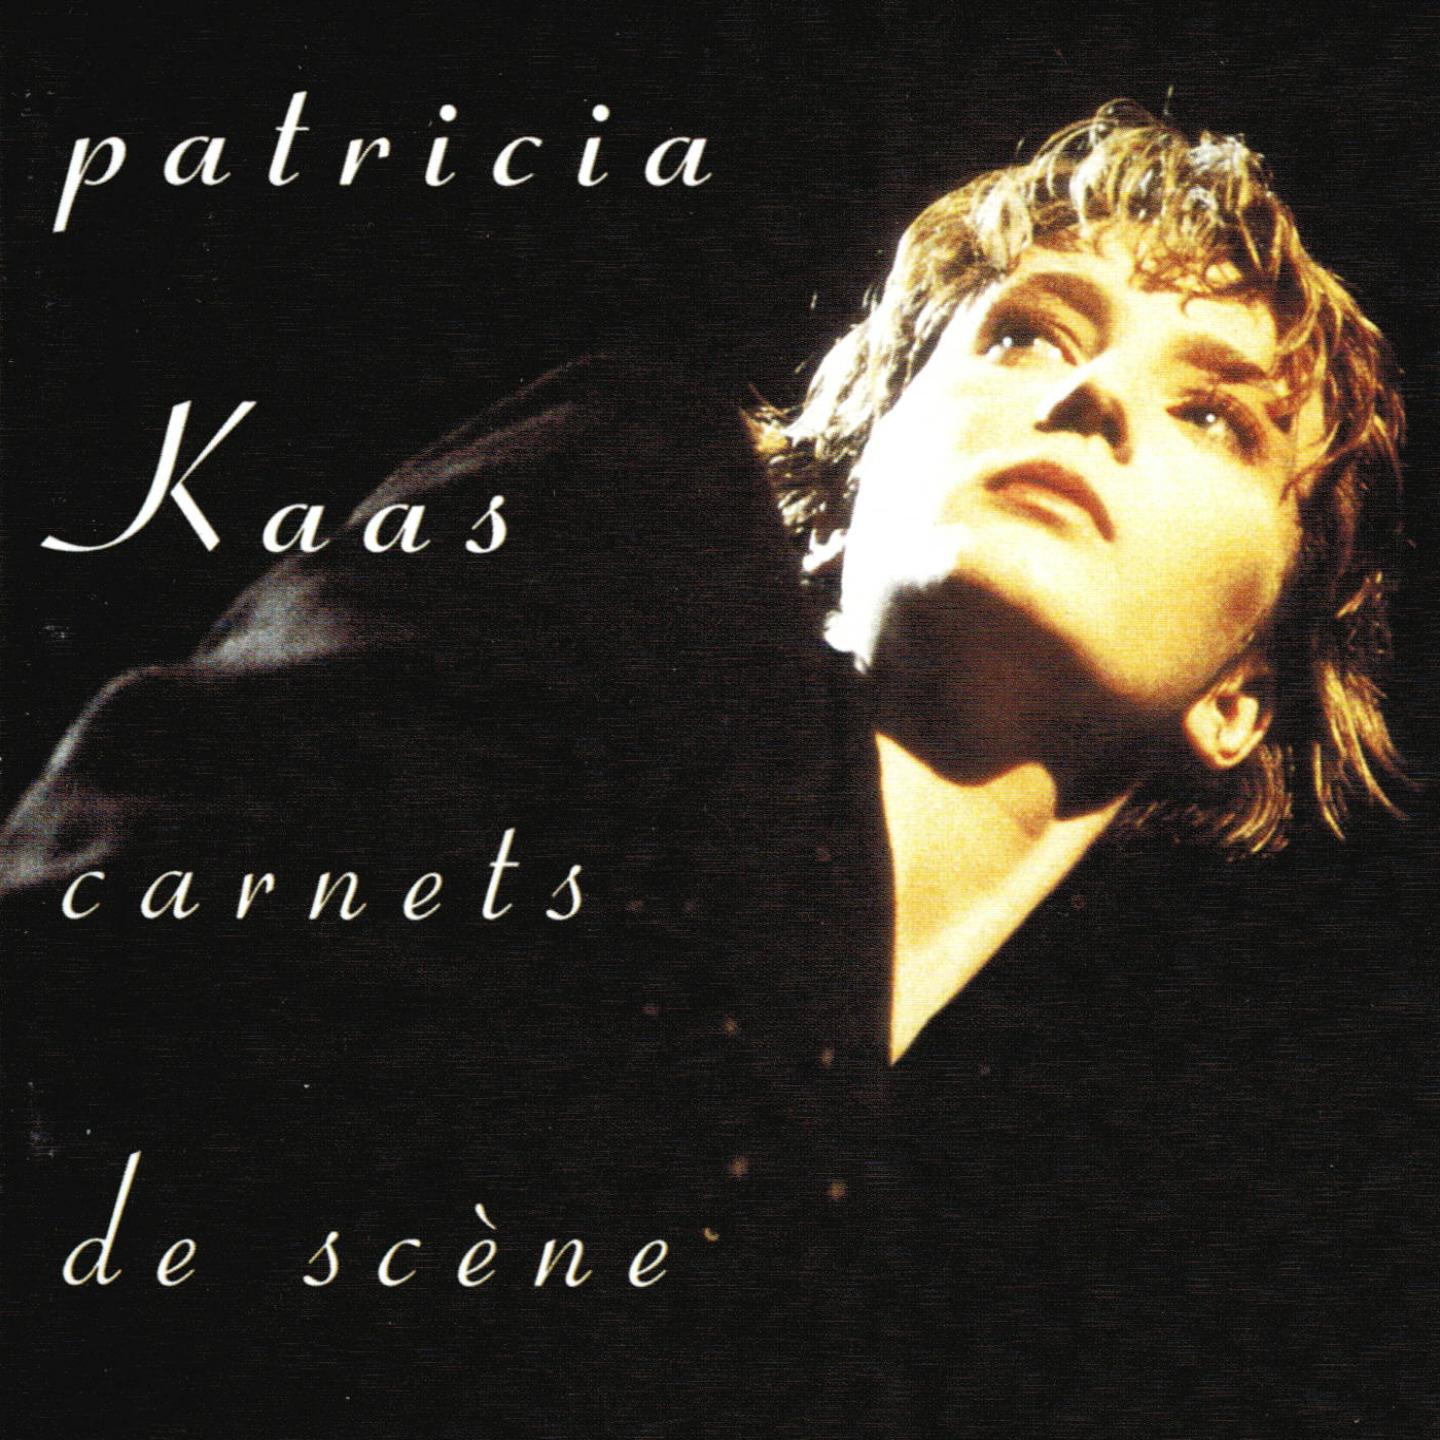 Альбом Carnets de scène исполнителя Patricia Kaas